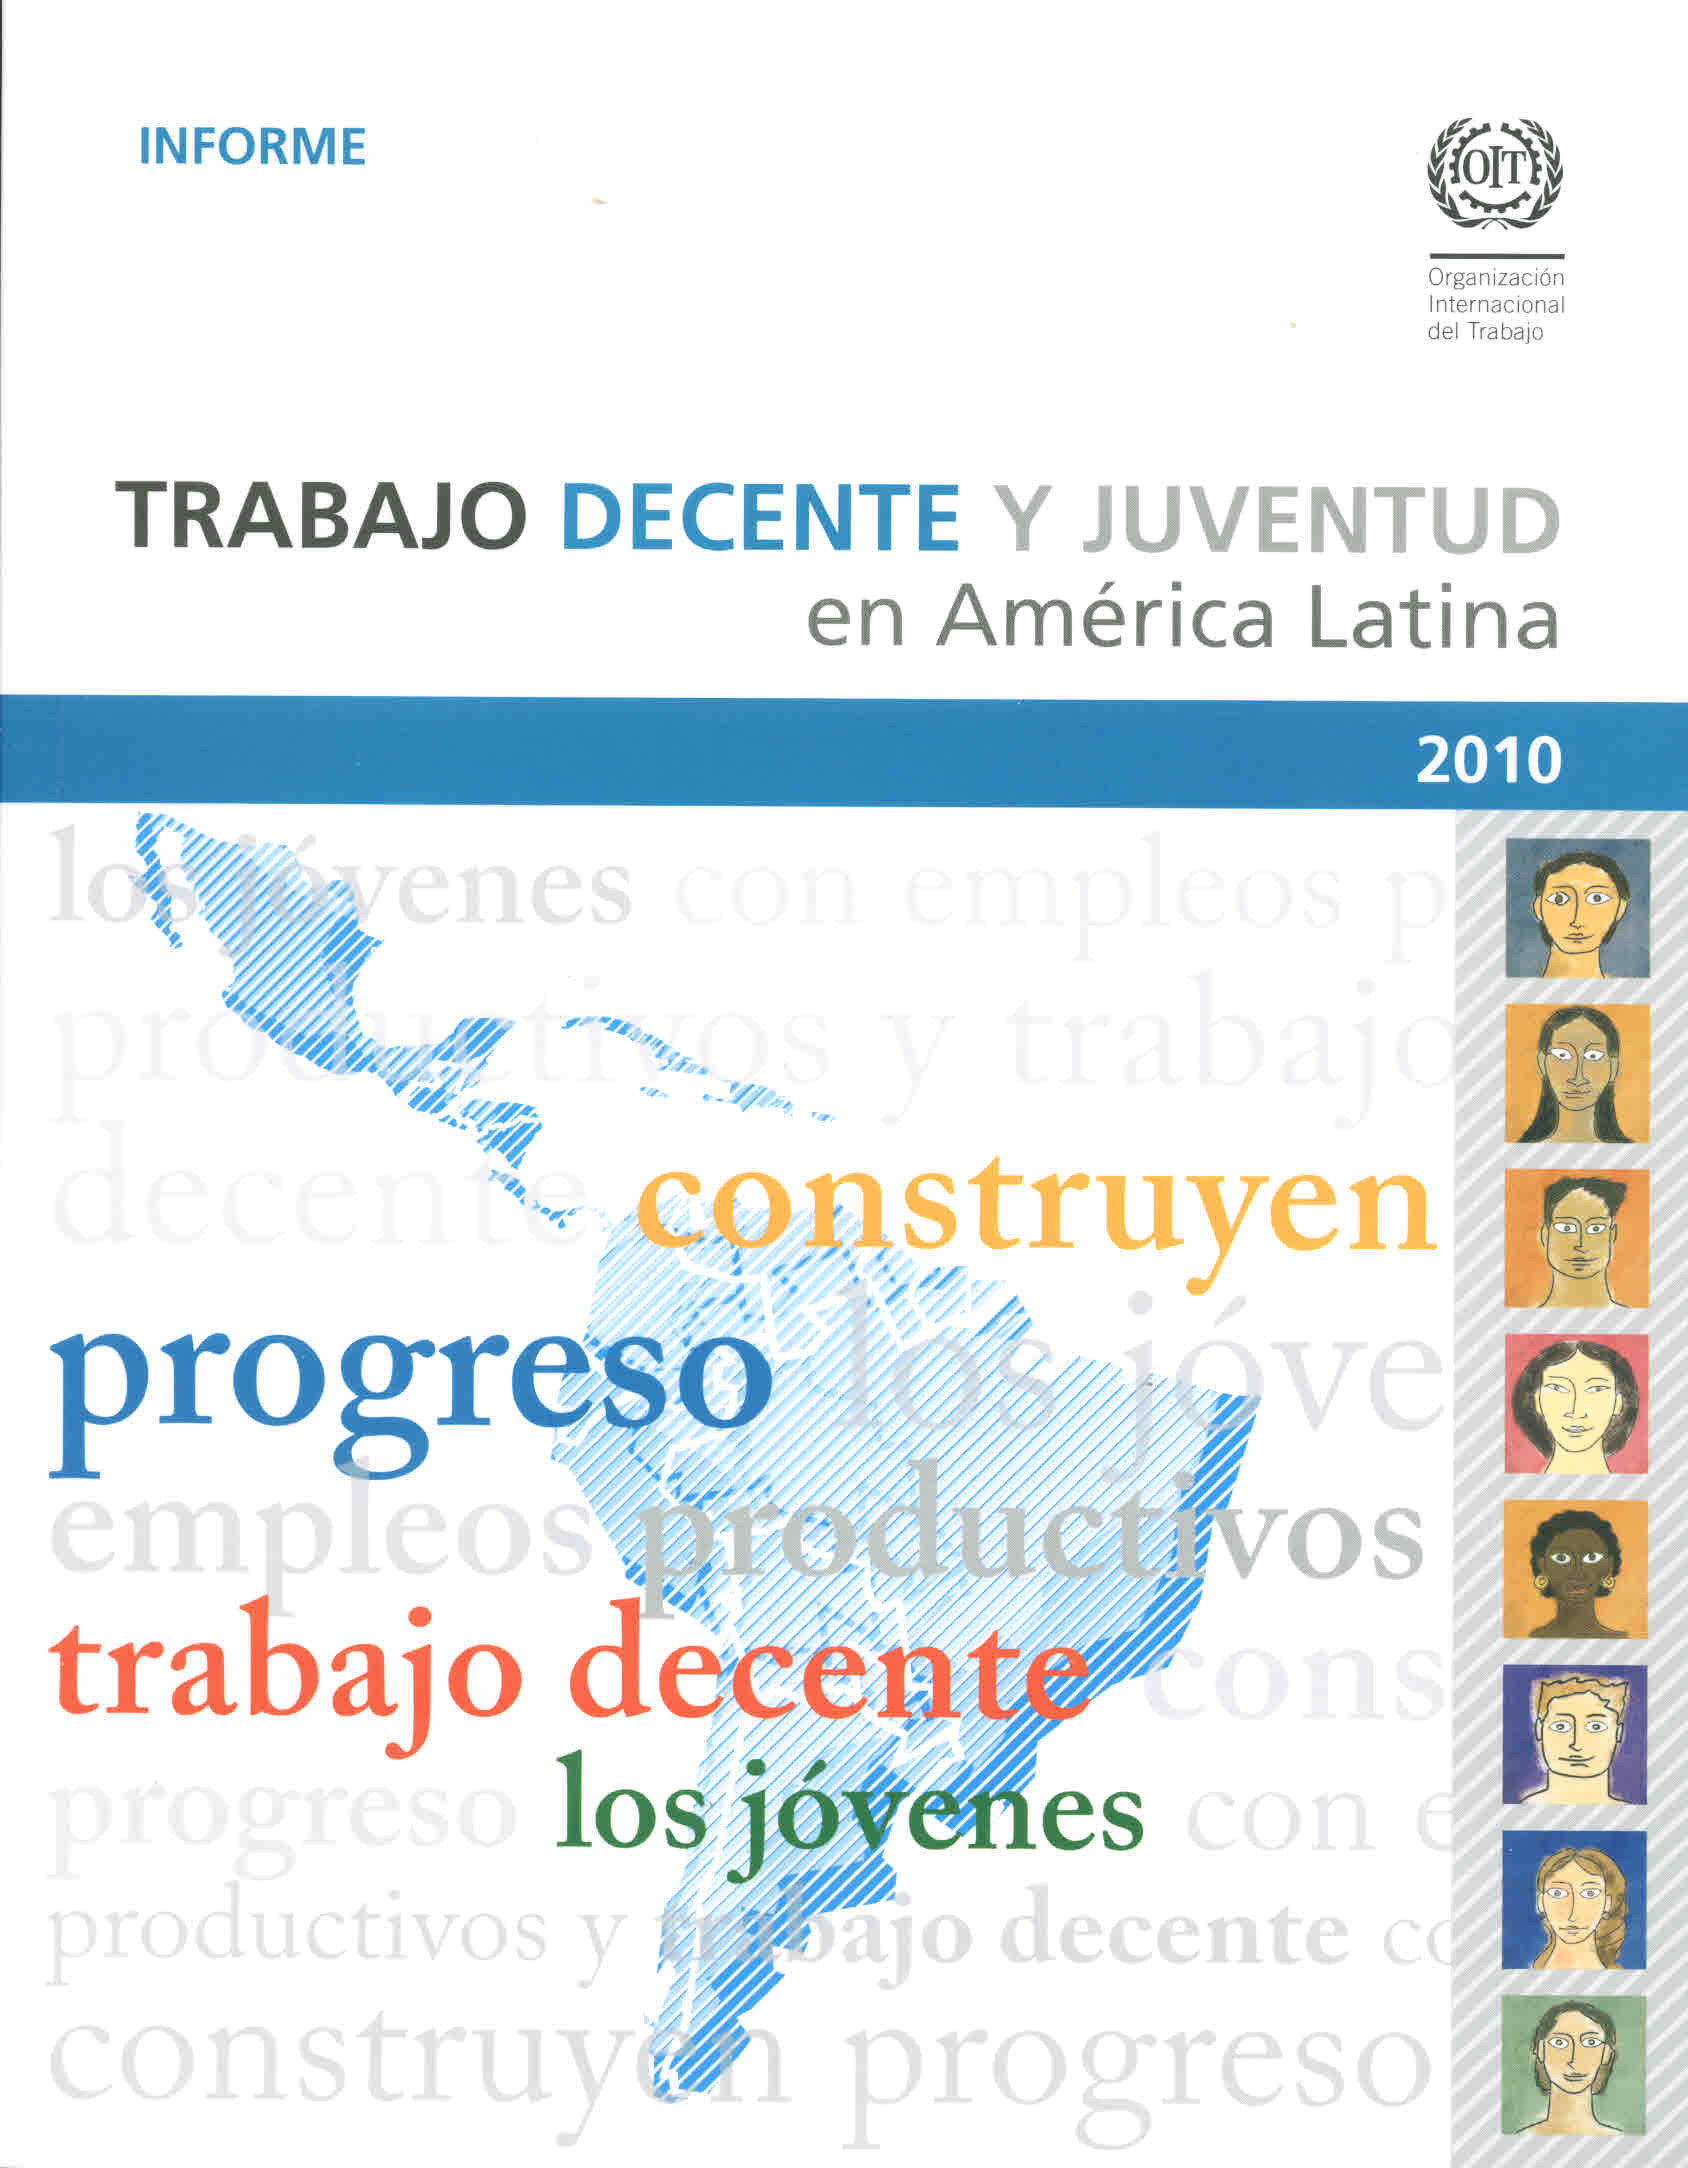 Trabajo decente y juventud. América Latina. Informe